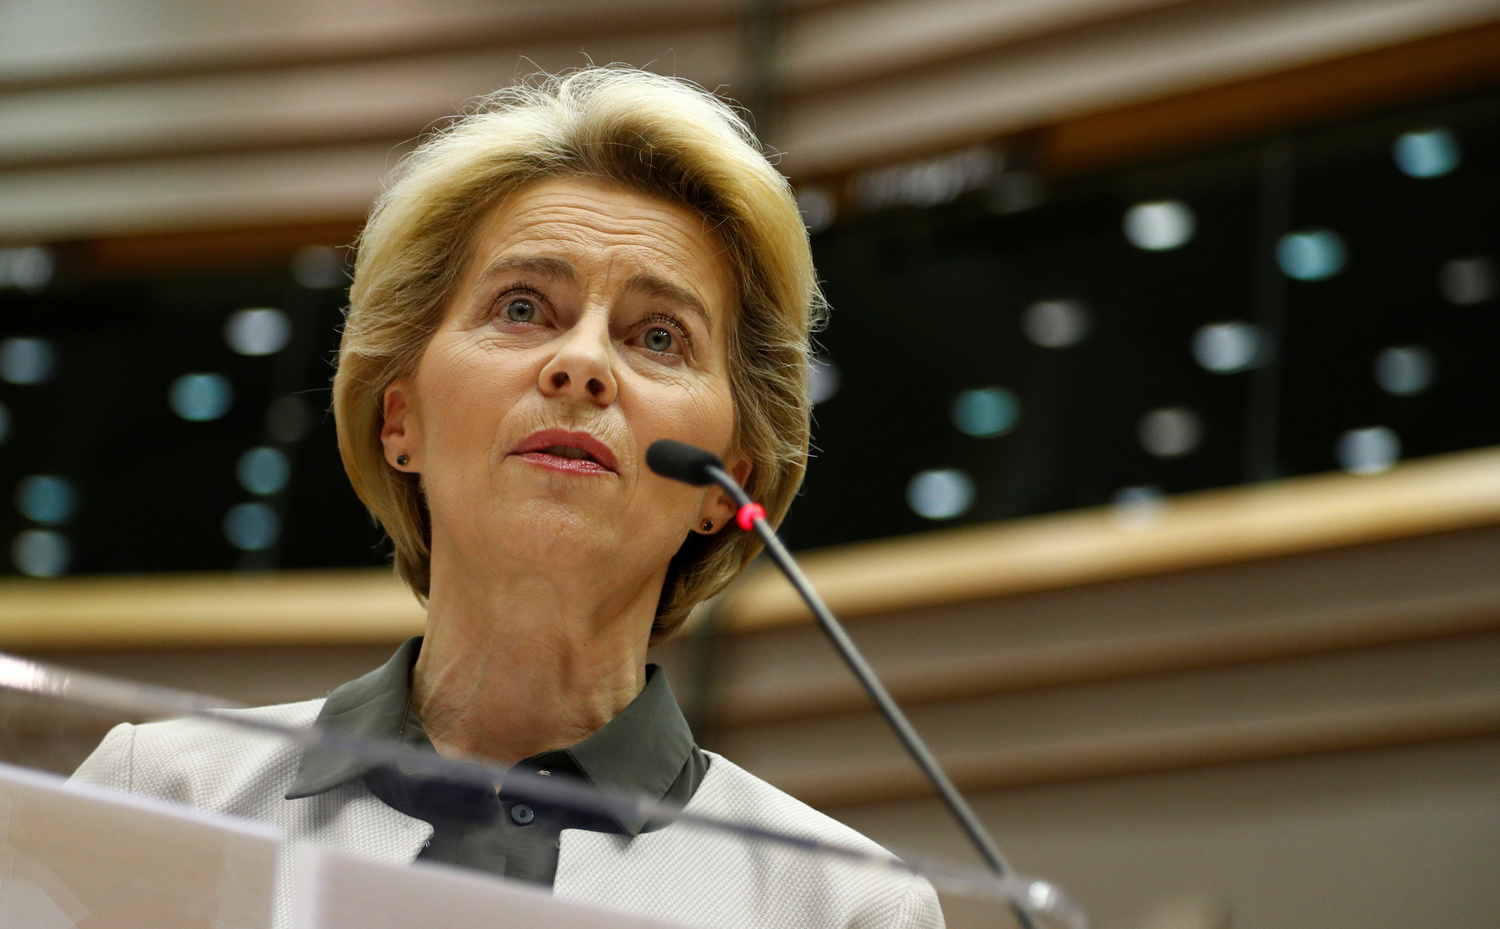 La Presidente della Commissione Europea Ursula von der Leyen interviene durante una sessione straordinaria per presentare il Green Deal, al Parlamento Europeo a Bruxelles, Belgio, 11 dicembre 2019. REUTERS/Francois Lenoir